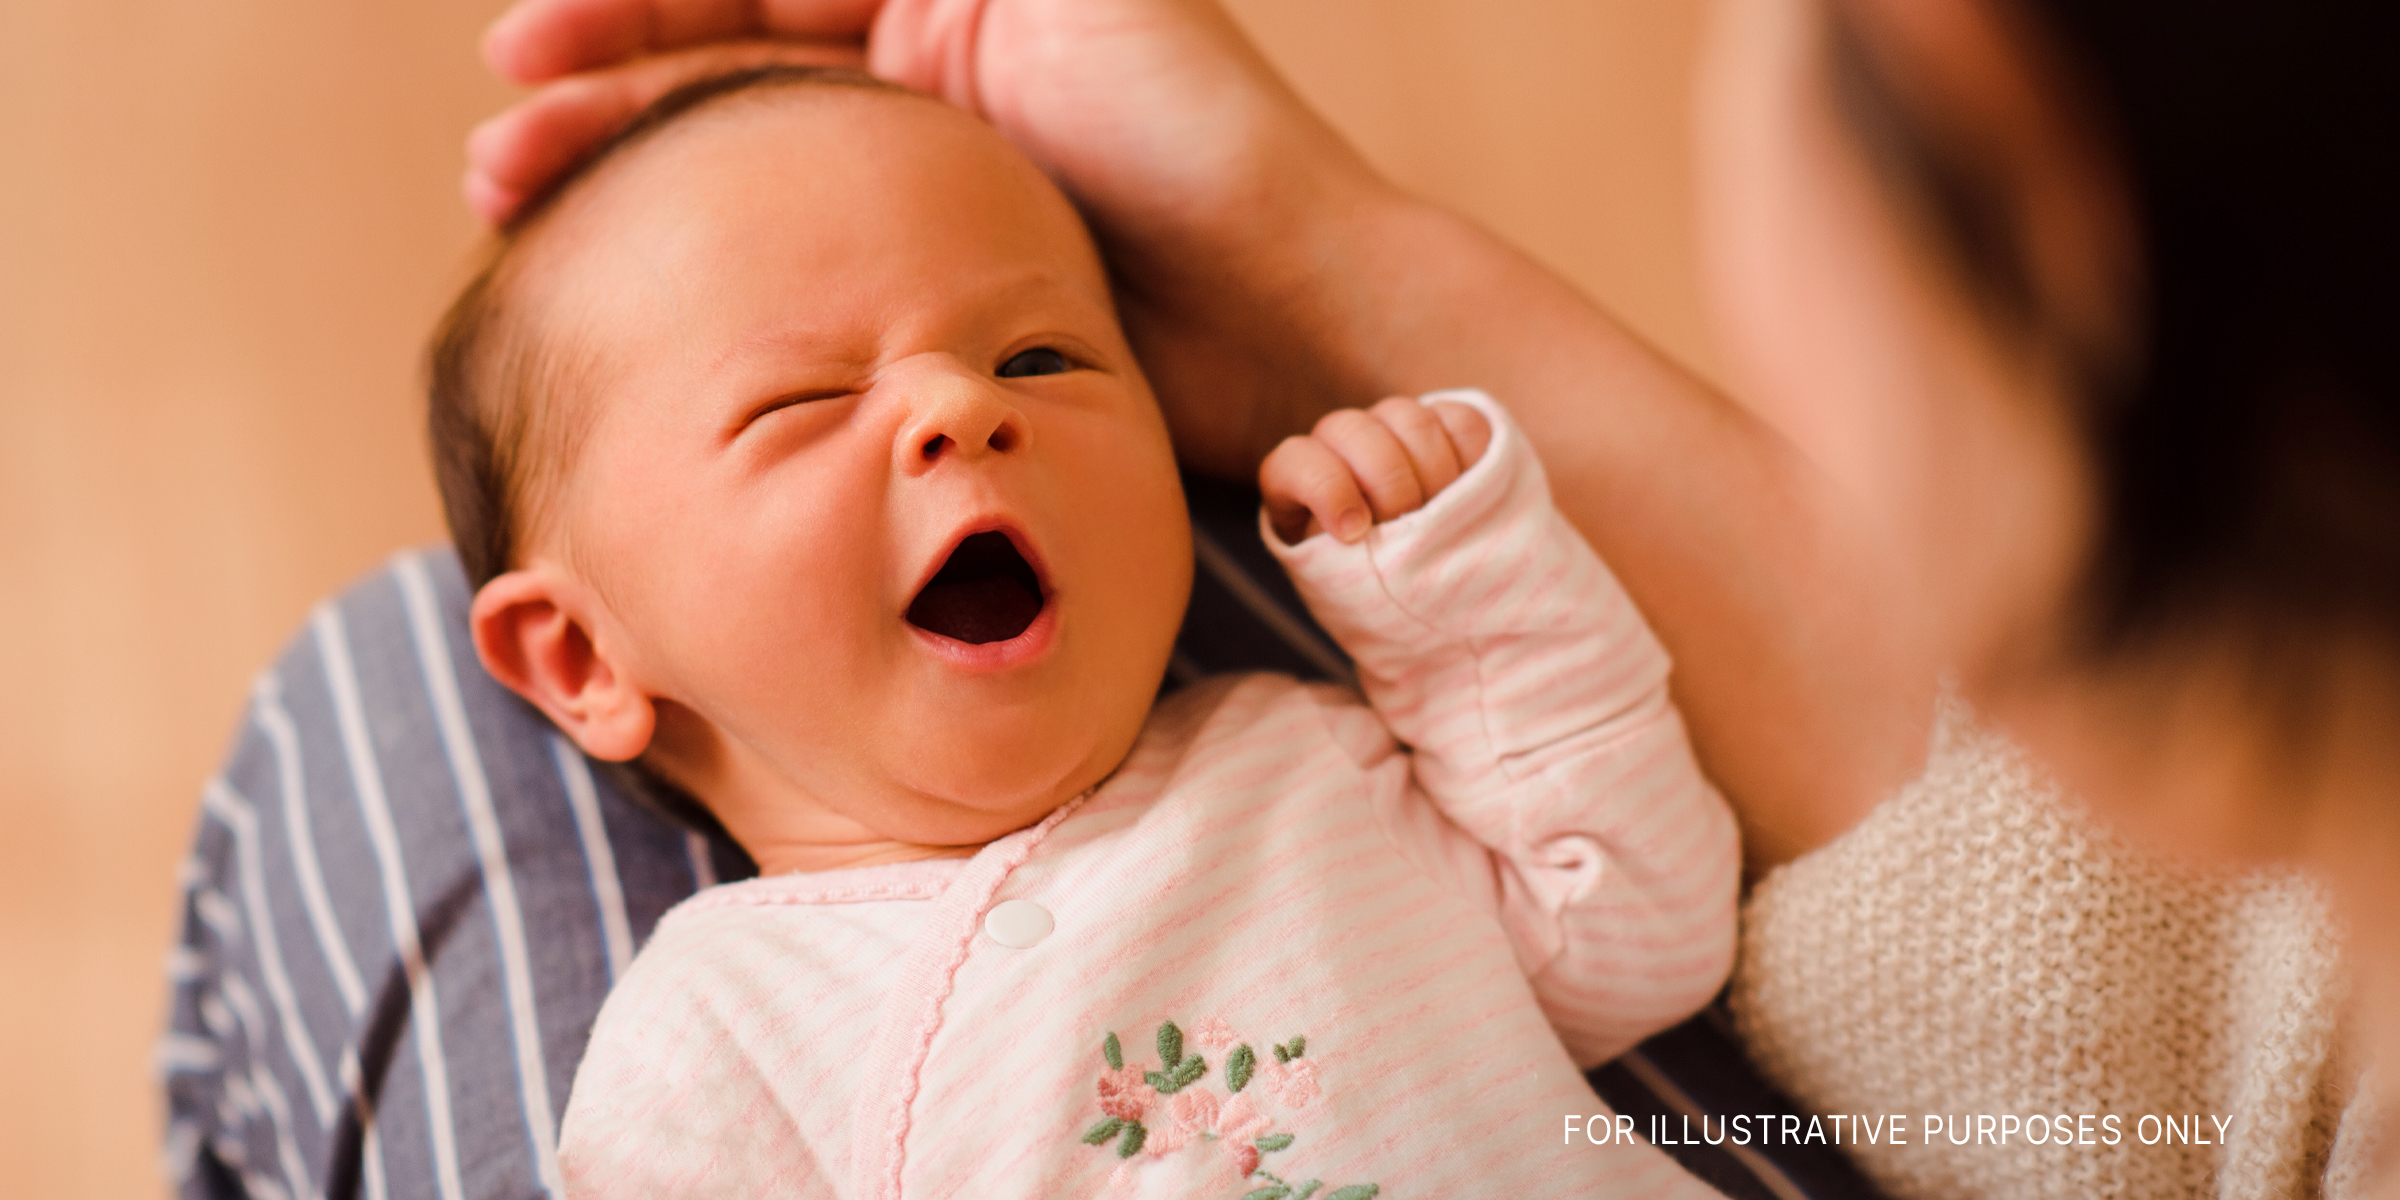 Newborn baby boy | Source: Shutterstock